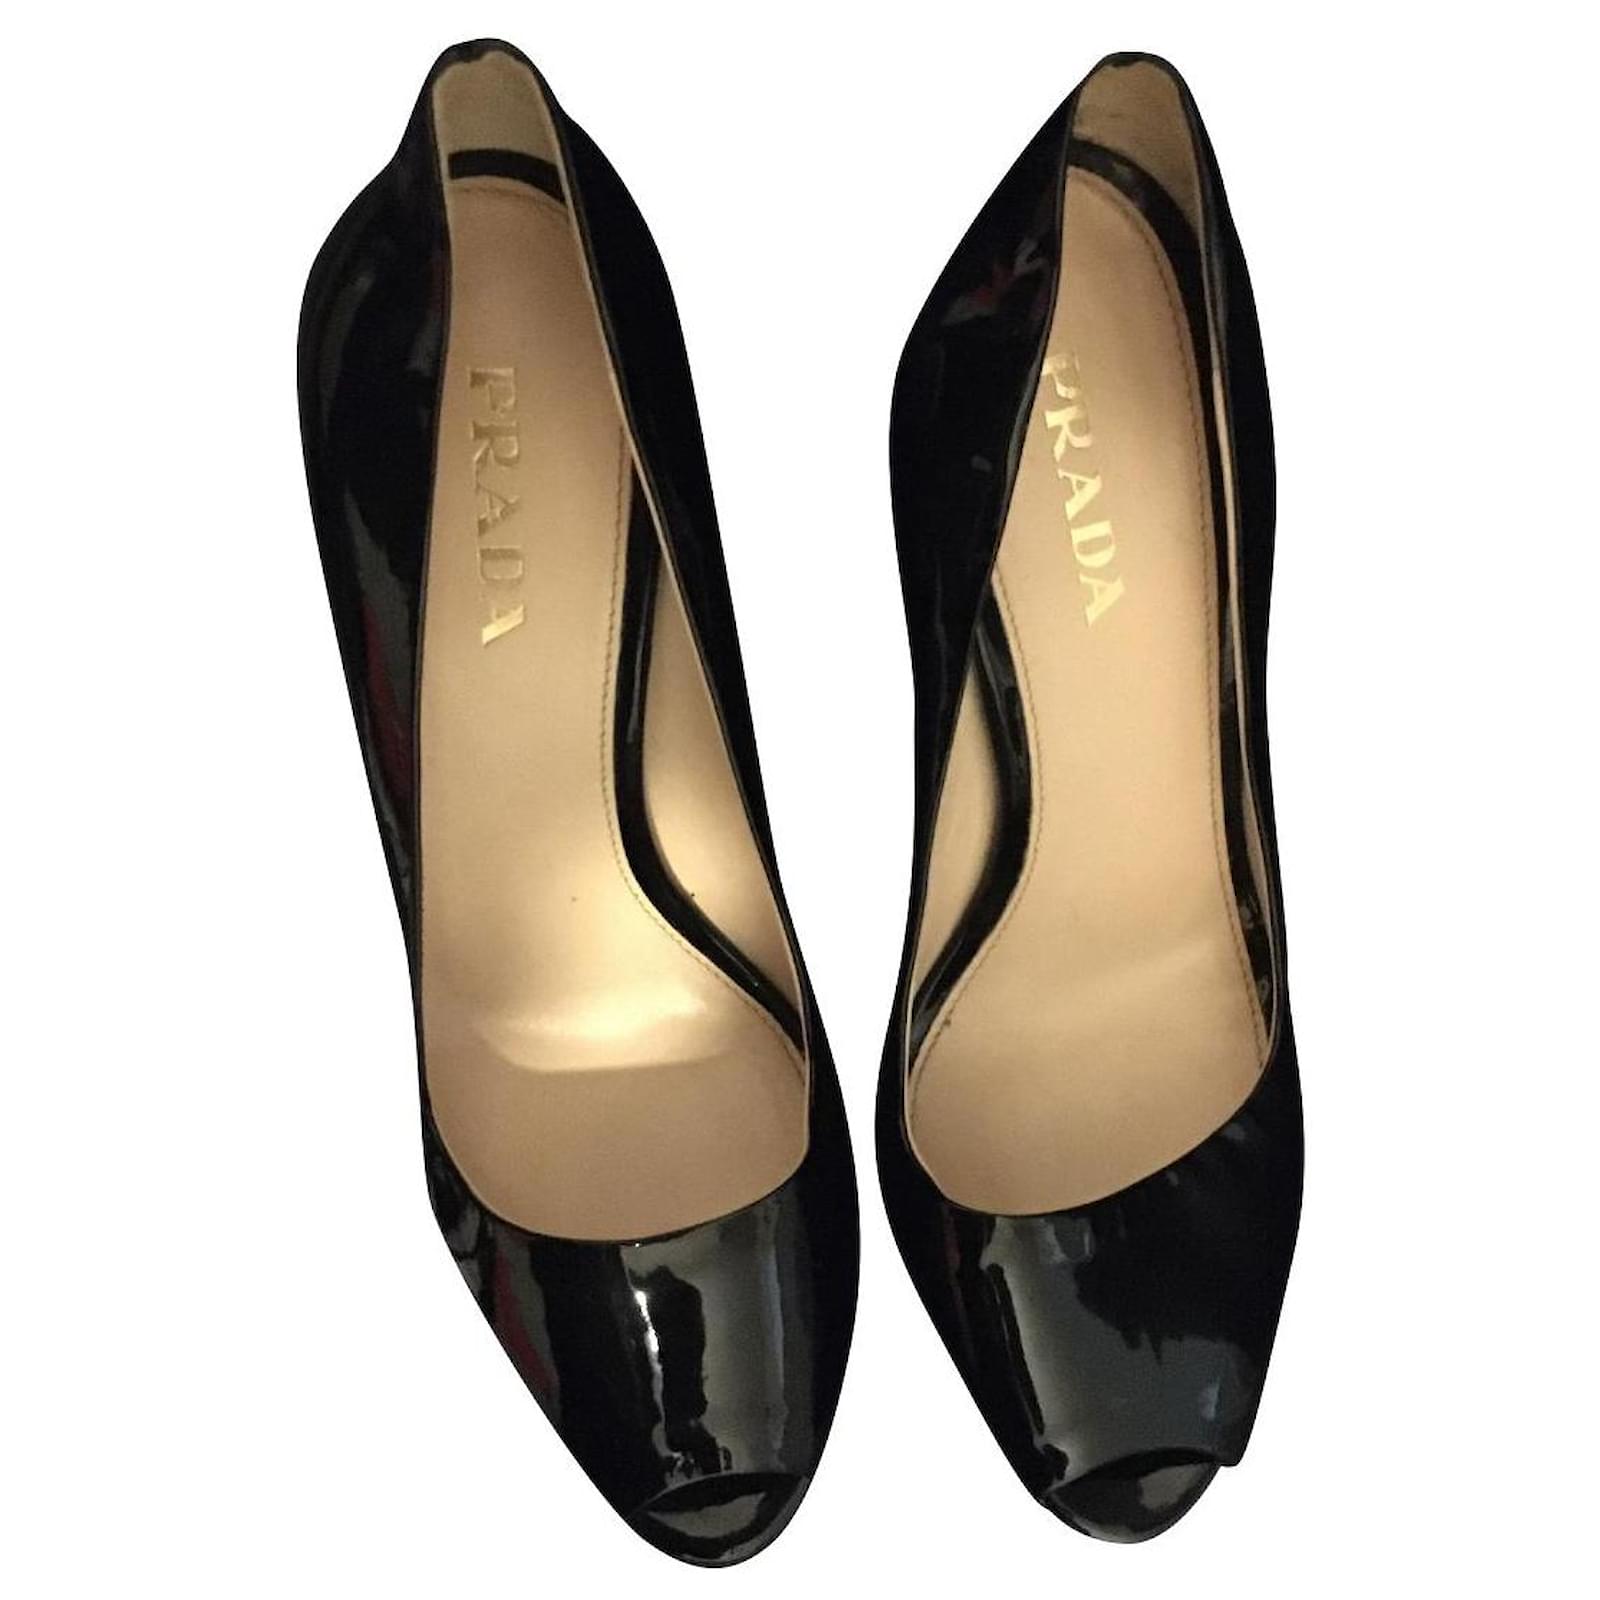 Prada | Shoes | Vintage 9s Prada Black Leather Platform Peep Toe Heels |  Poshmark